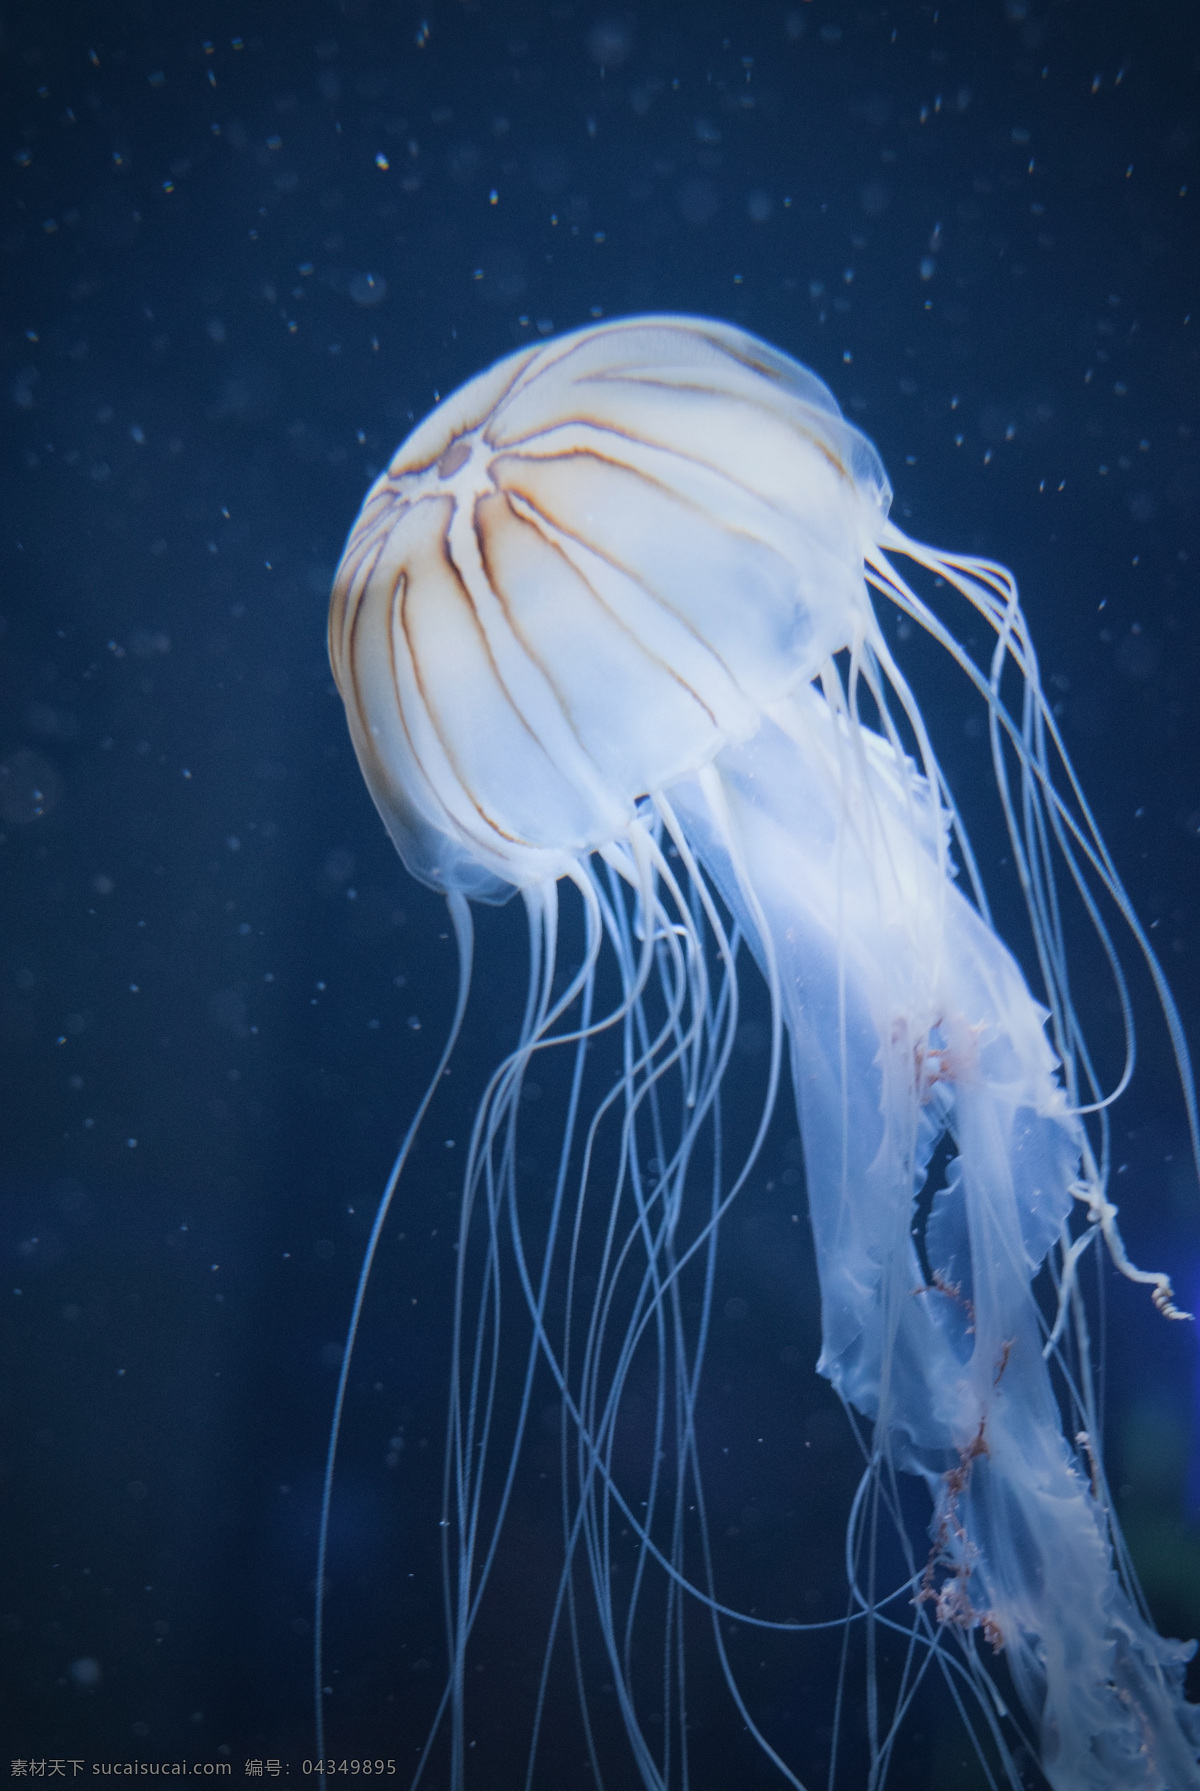 水母 海洋生物 水下 海洋 动物 软体动物 无脊椎动物 生物世界